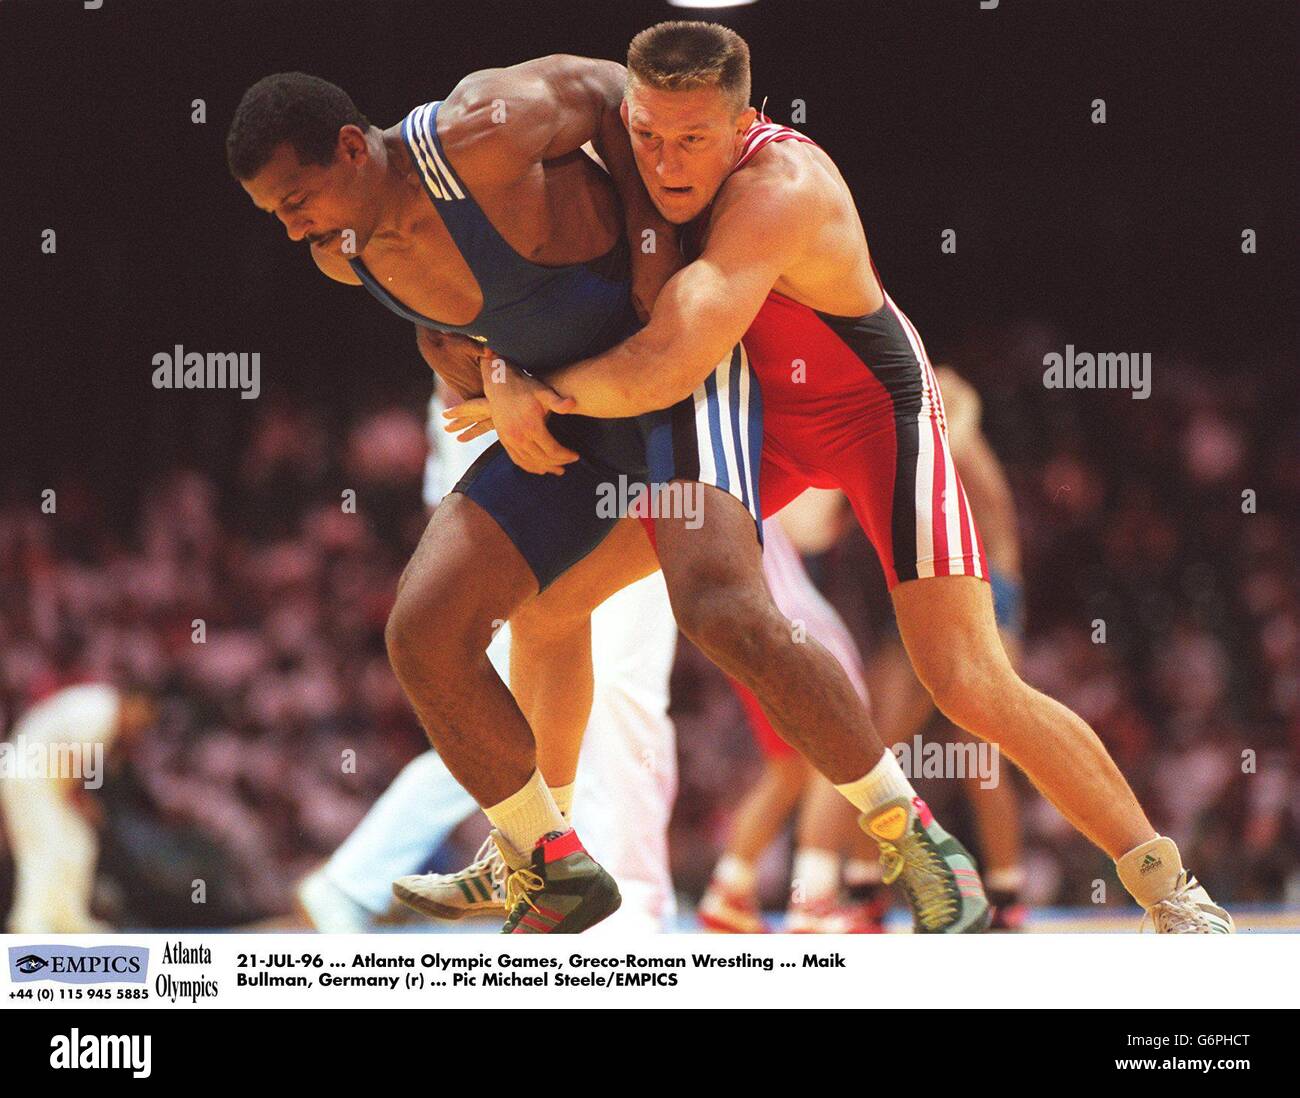 Olympische Spiele in Atlanta – griechisch-römisches Ringen der Männer. Maik  Bullman, Deutschland (r Stockfotografie - Alamy